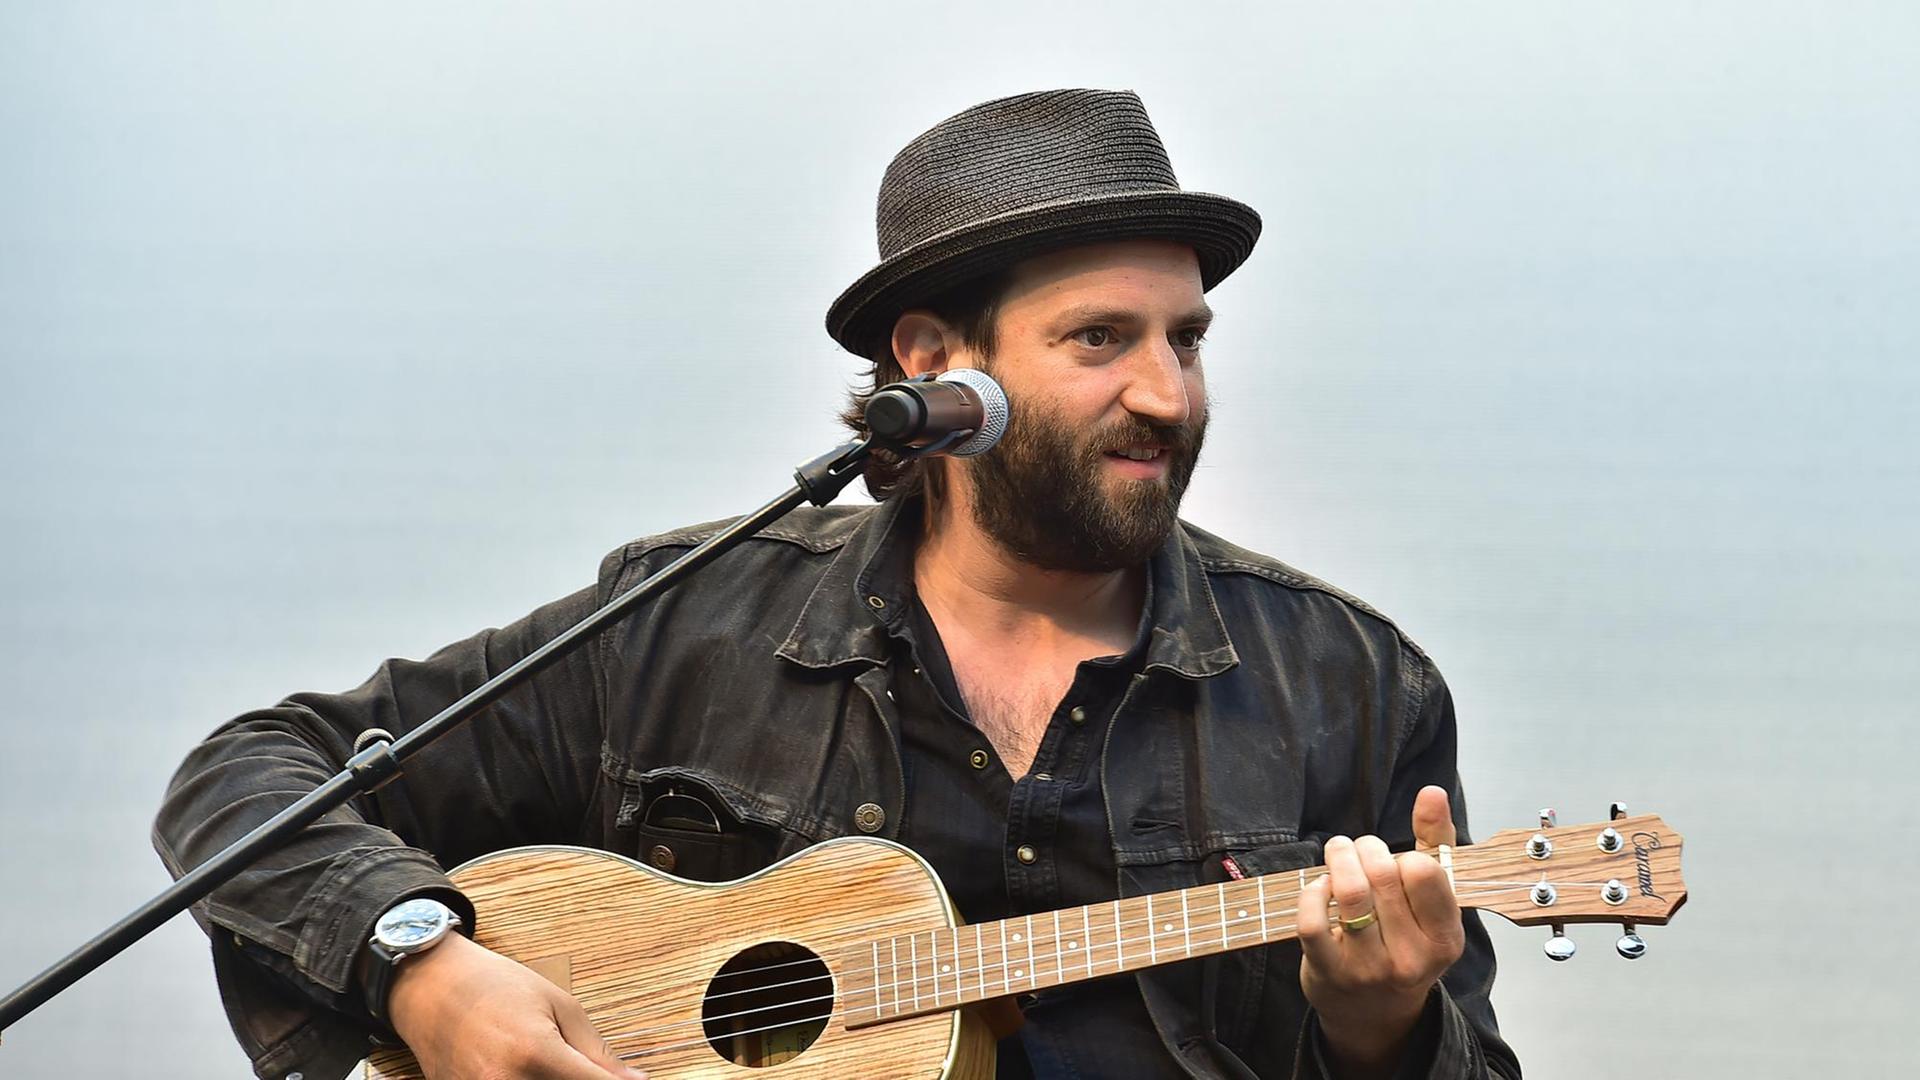 Der Musiker Daniel Kahn sitzt mit schwarzem Hemd, schwarzem Hut und einer Ukulele hinter einem Mikrofon.